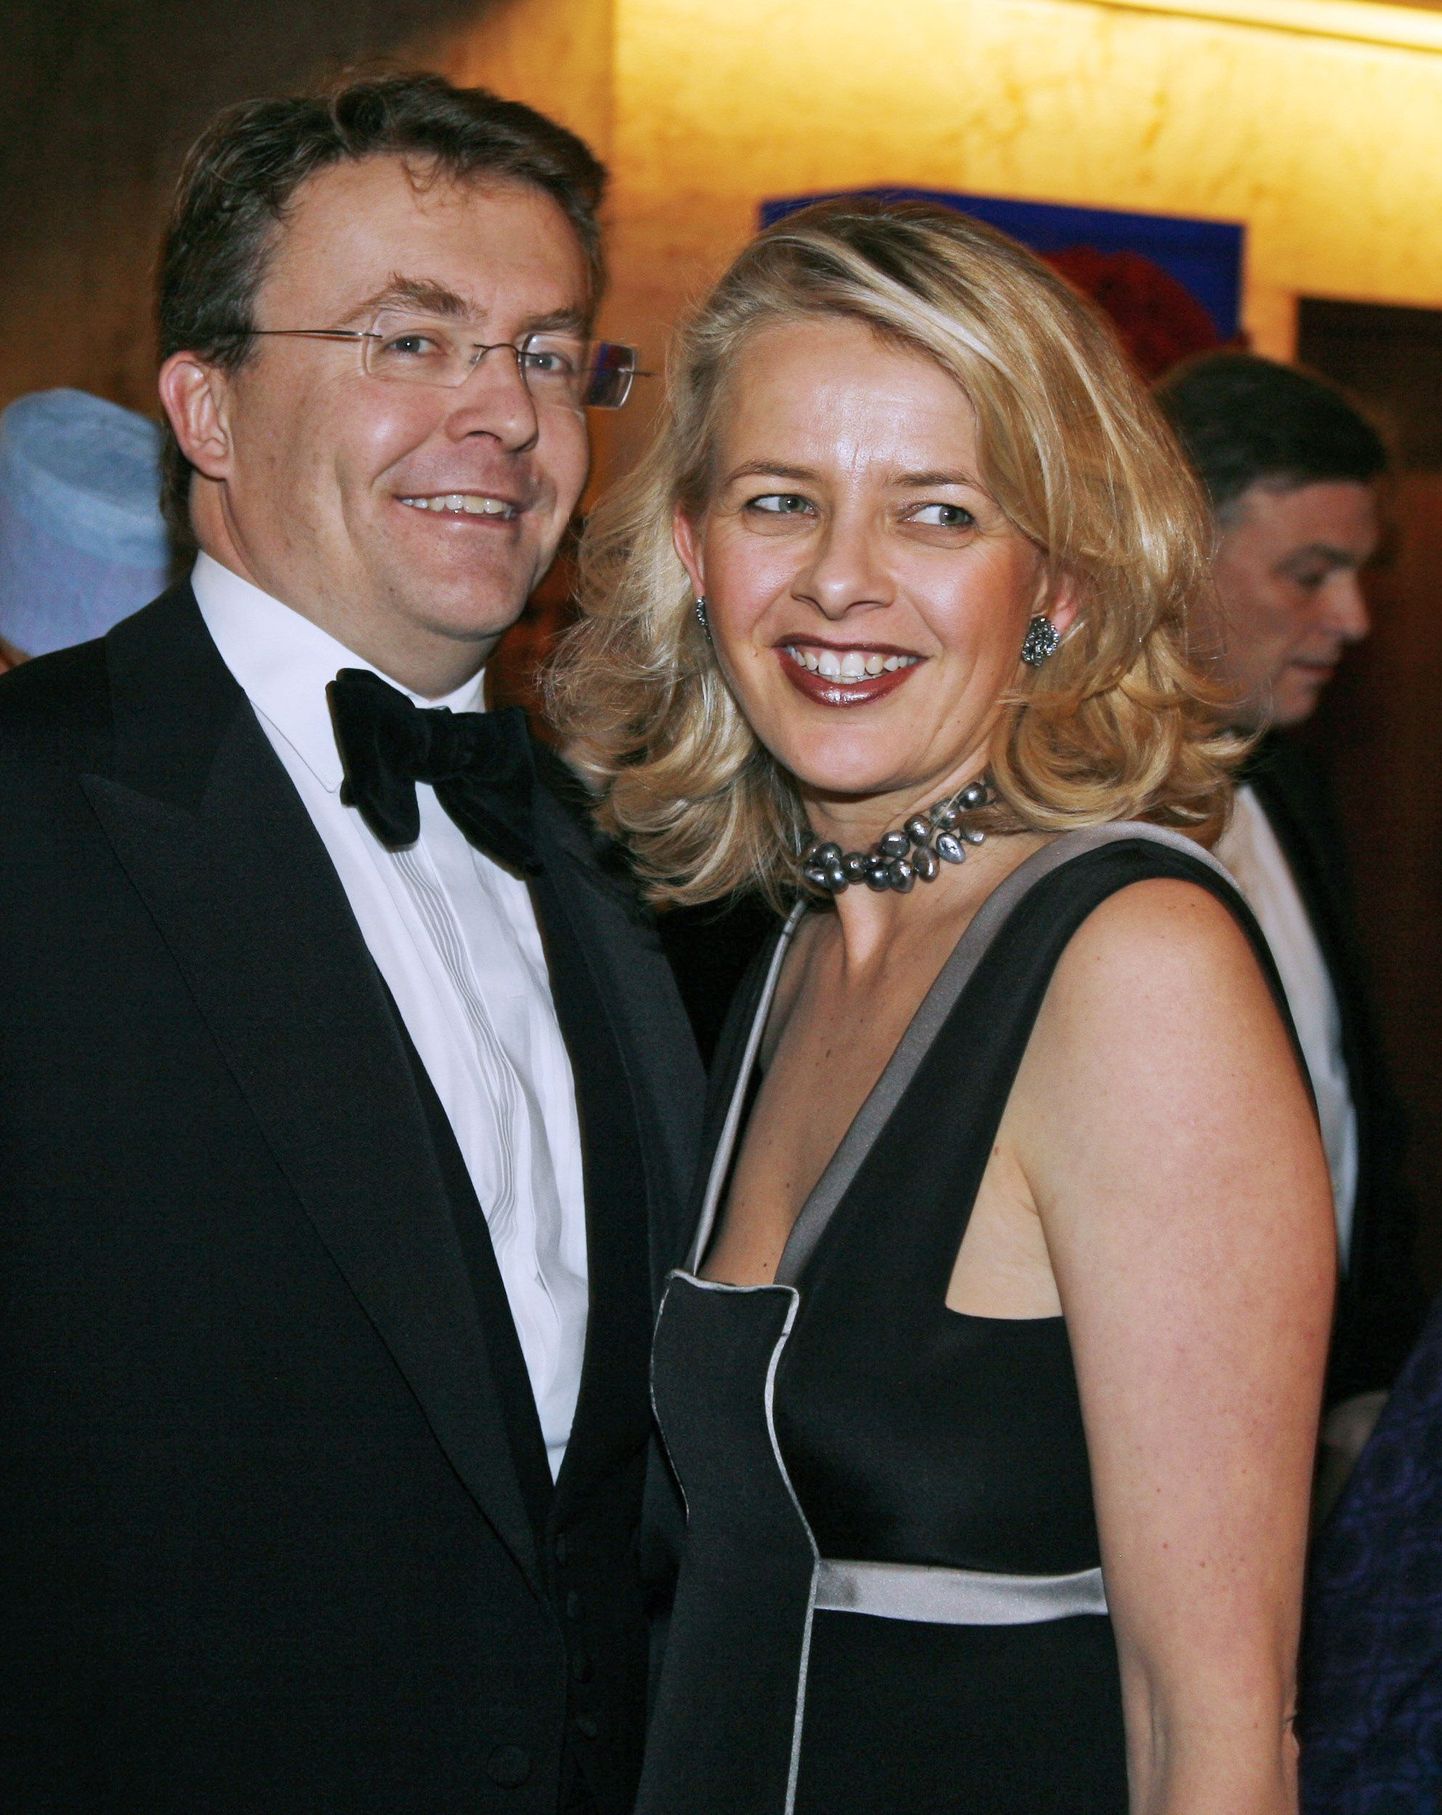 Prints Friso ja tema abikaasa Mabel 2008. aastal Martti Ahtisaari Nobeli preemia auks korraldatud õhtusöögil.